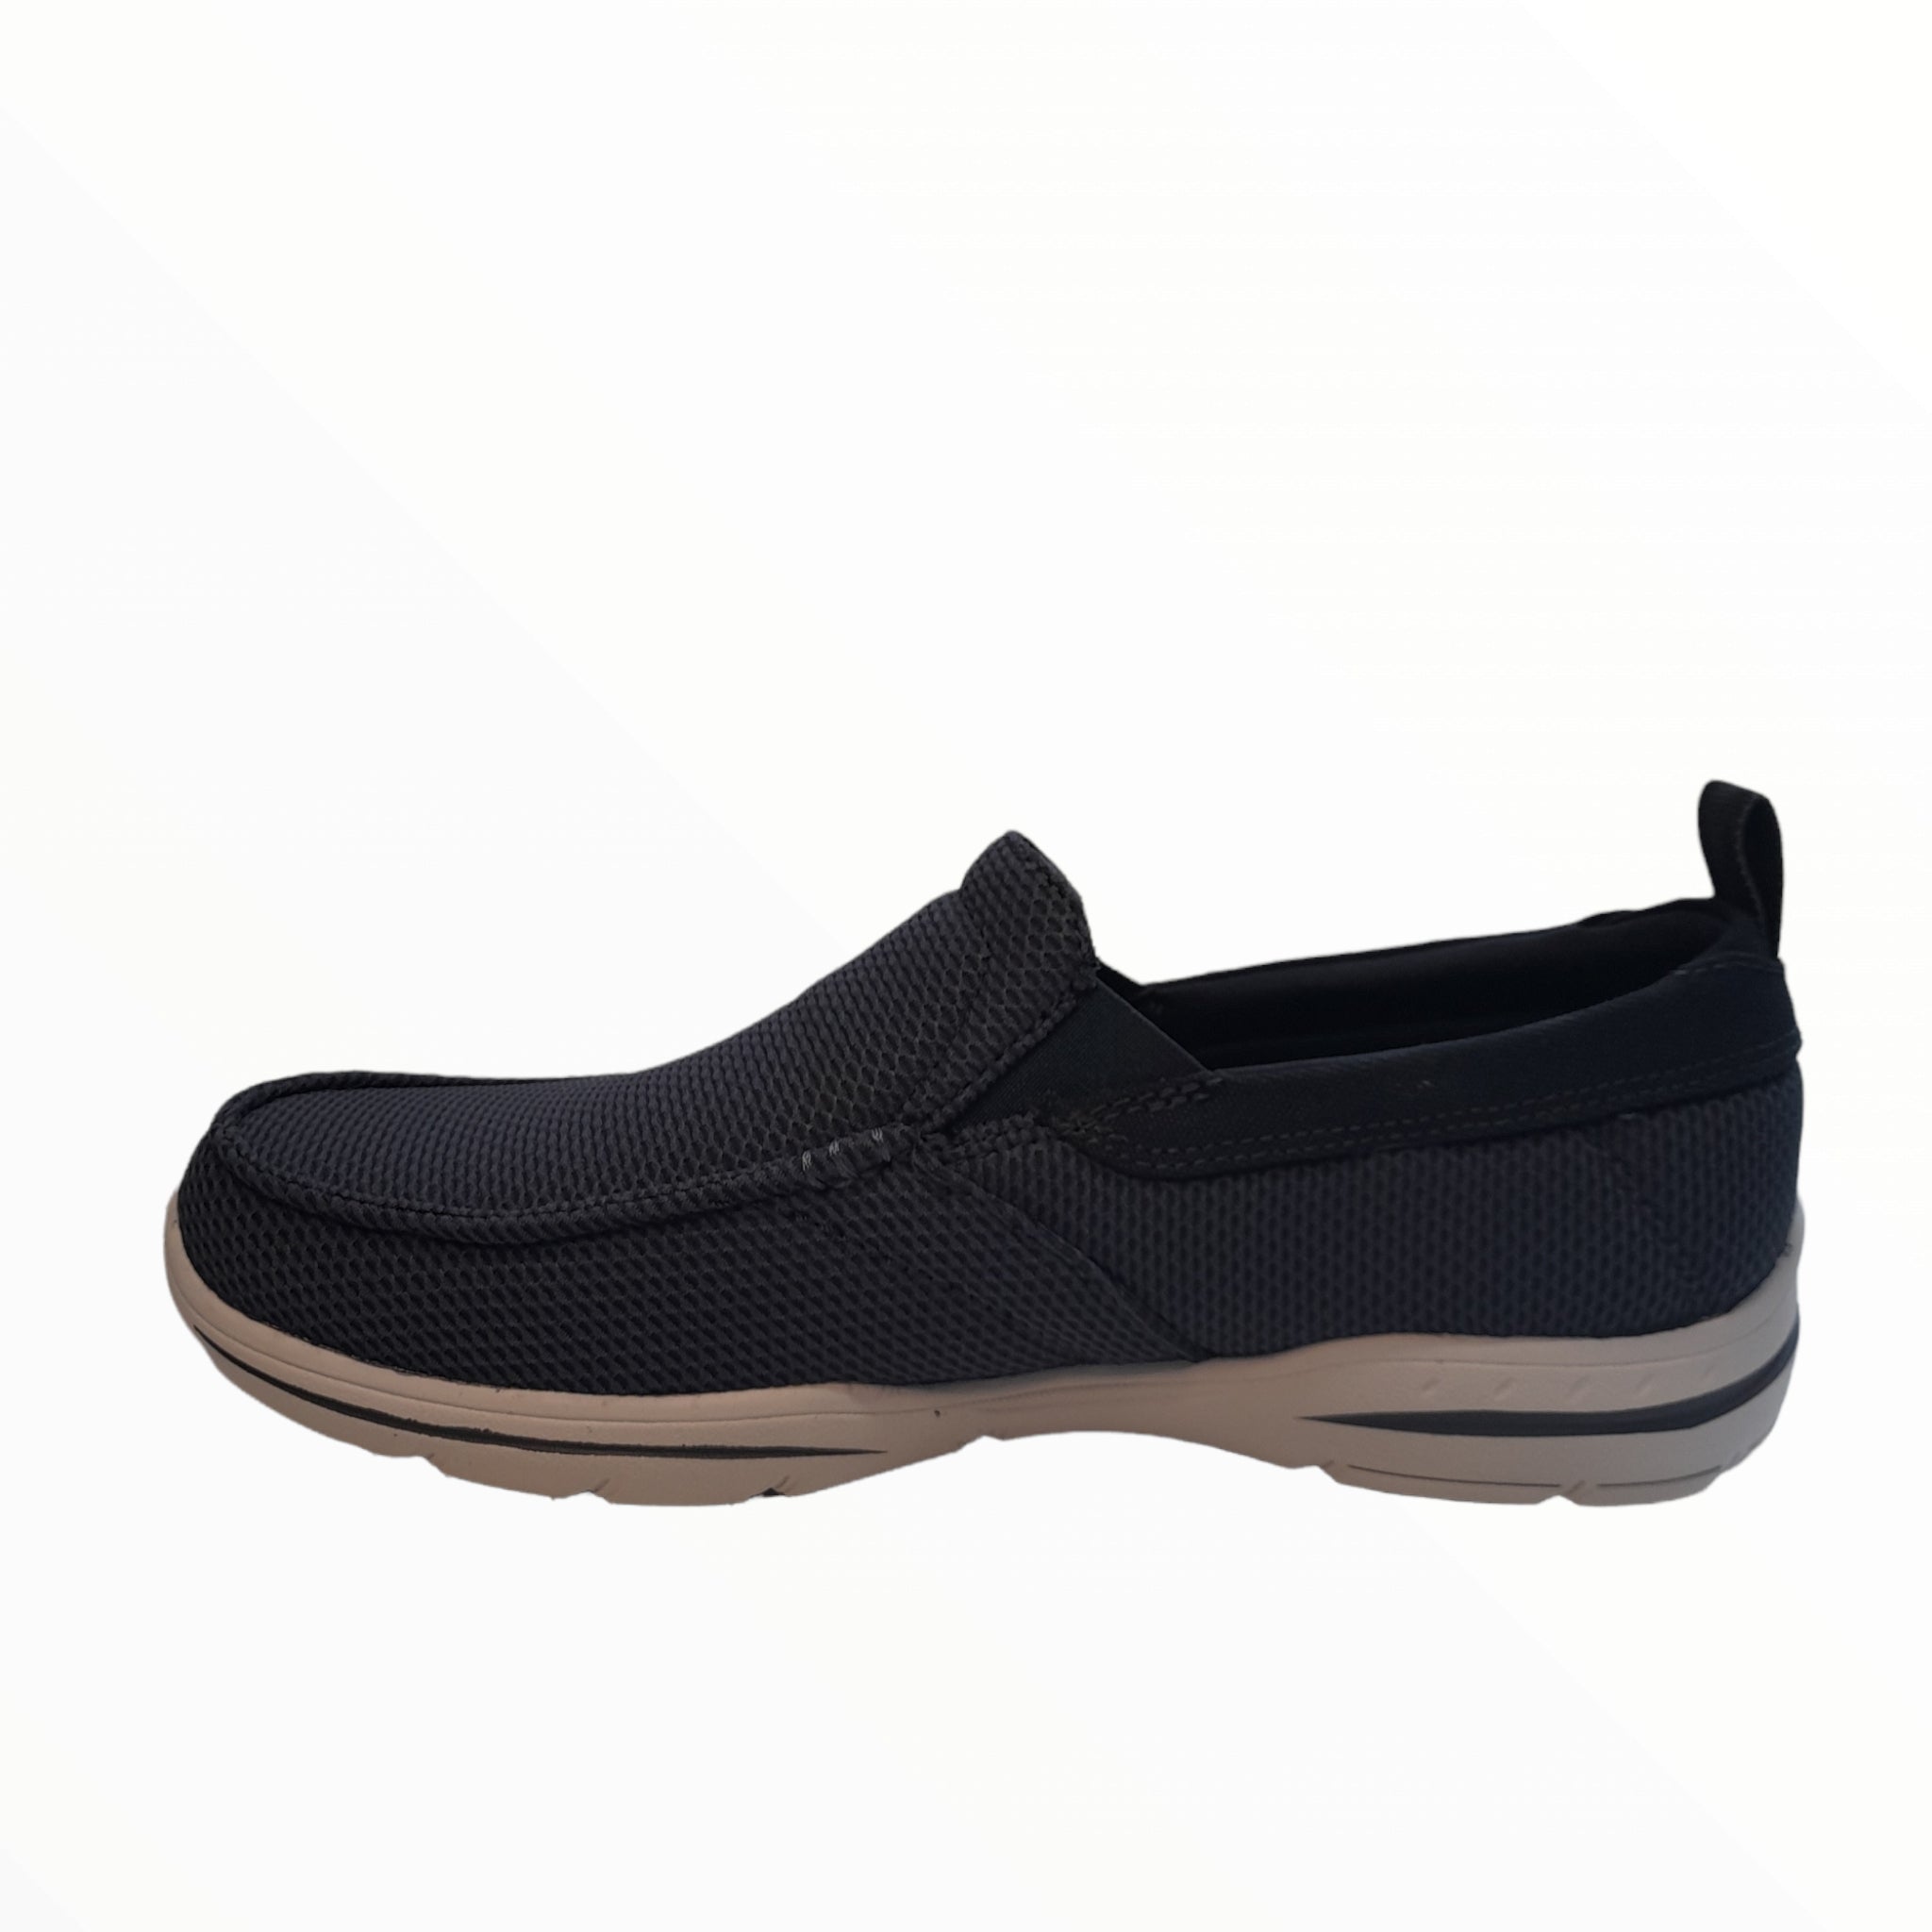 Walton - shoe&amp;me - Skechers - Sneakers - Summer 22